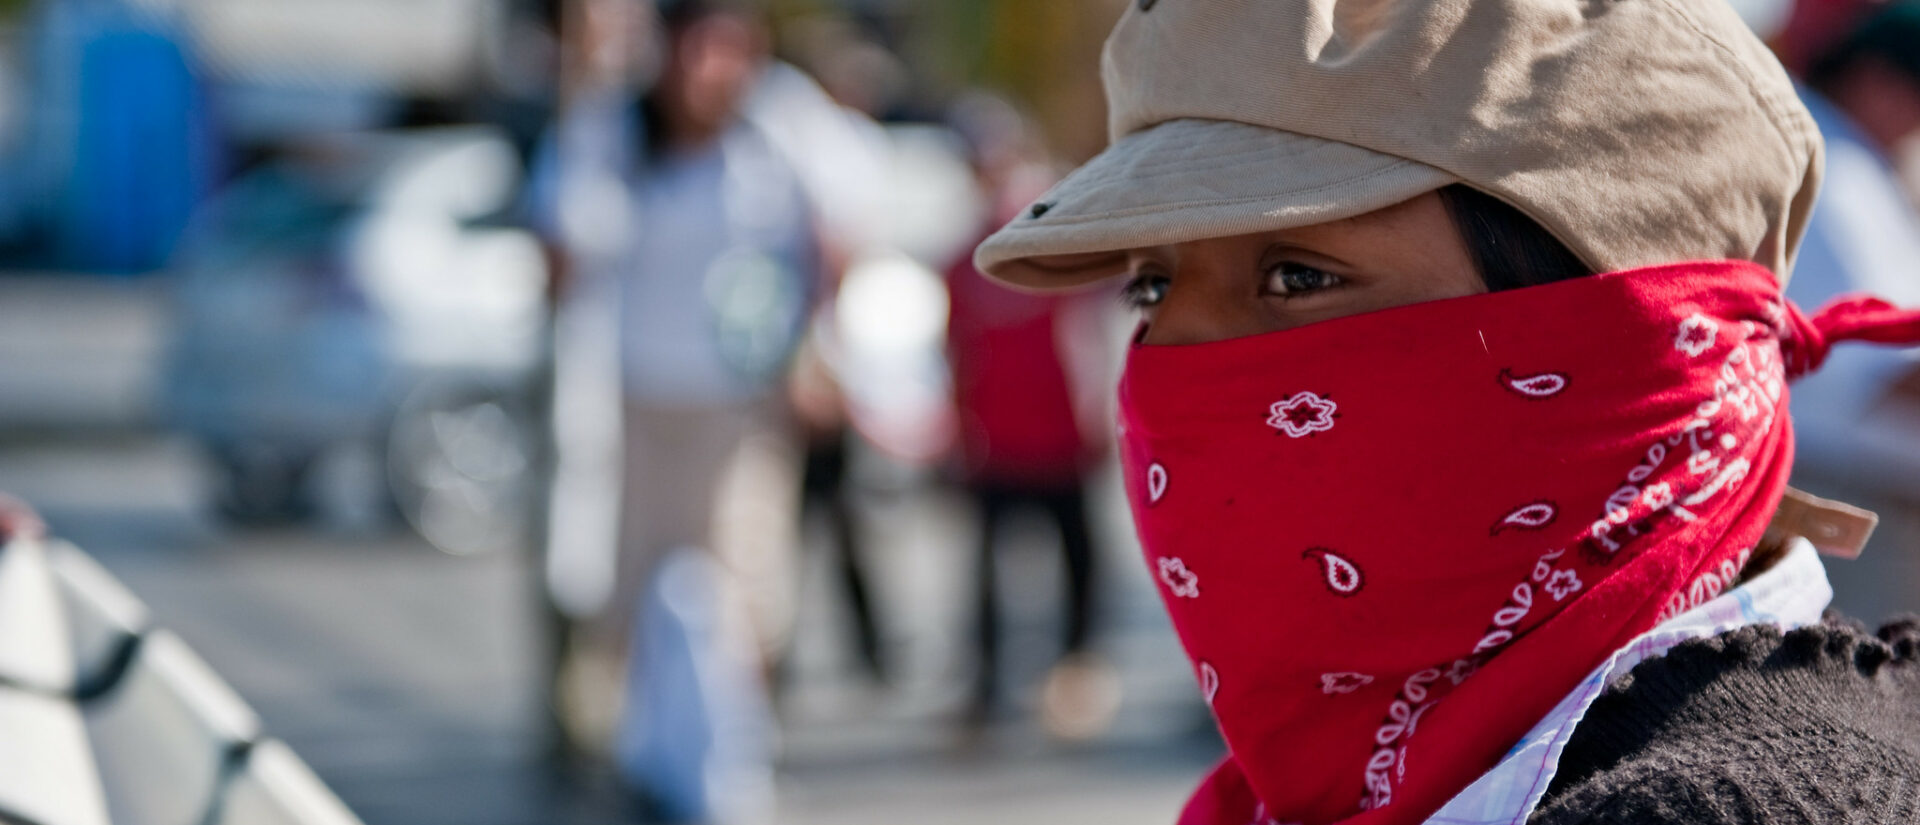 Les manifestations contre les violences policières ont pris de l'ampleur au Mexique | photo d'illustration © Oxfam International/Flickr/CC BY-NC-ND 2.0